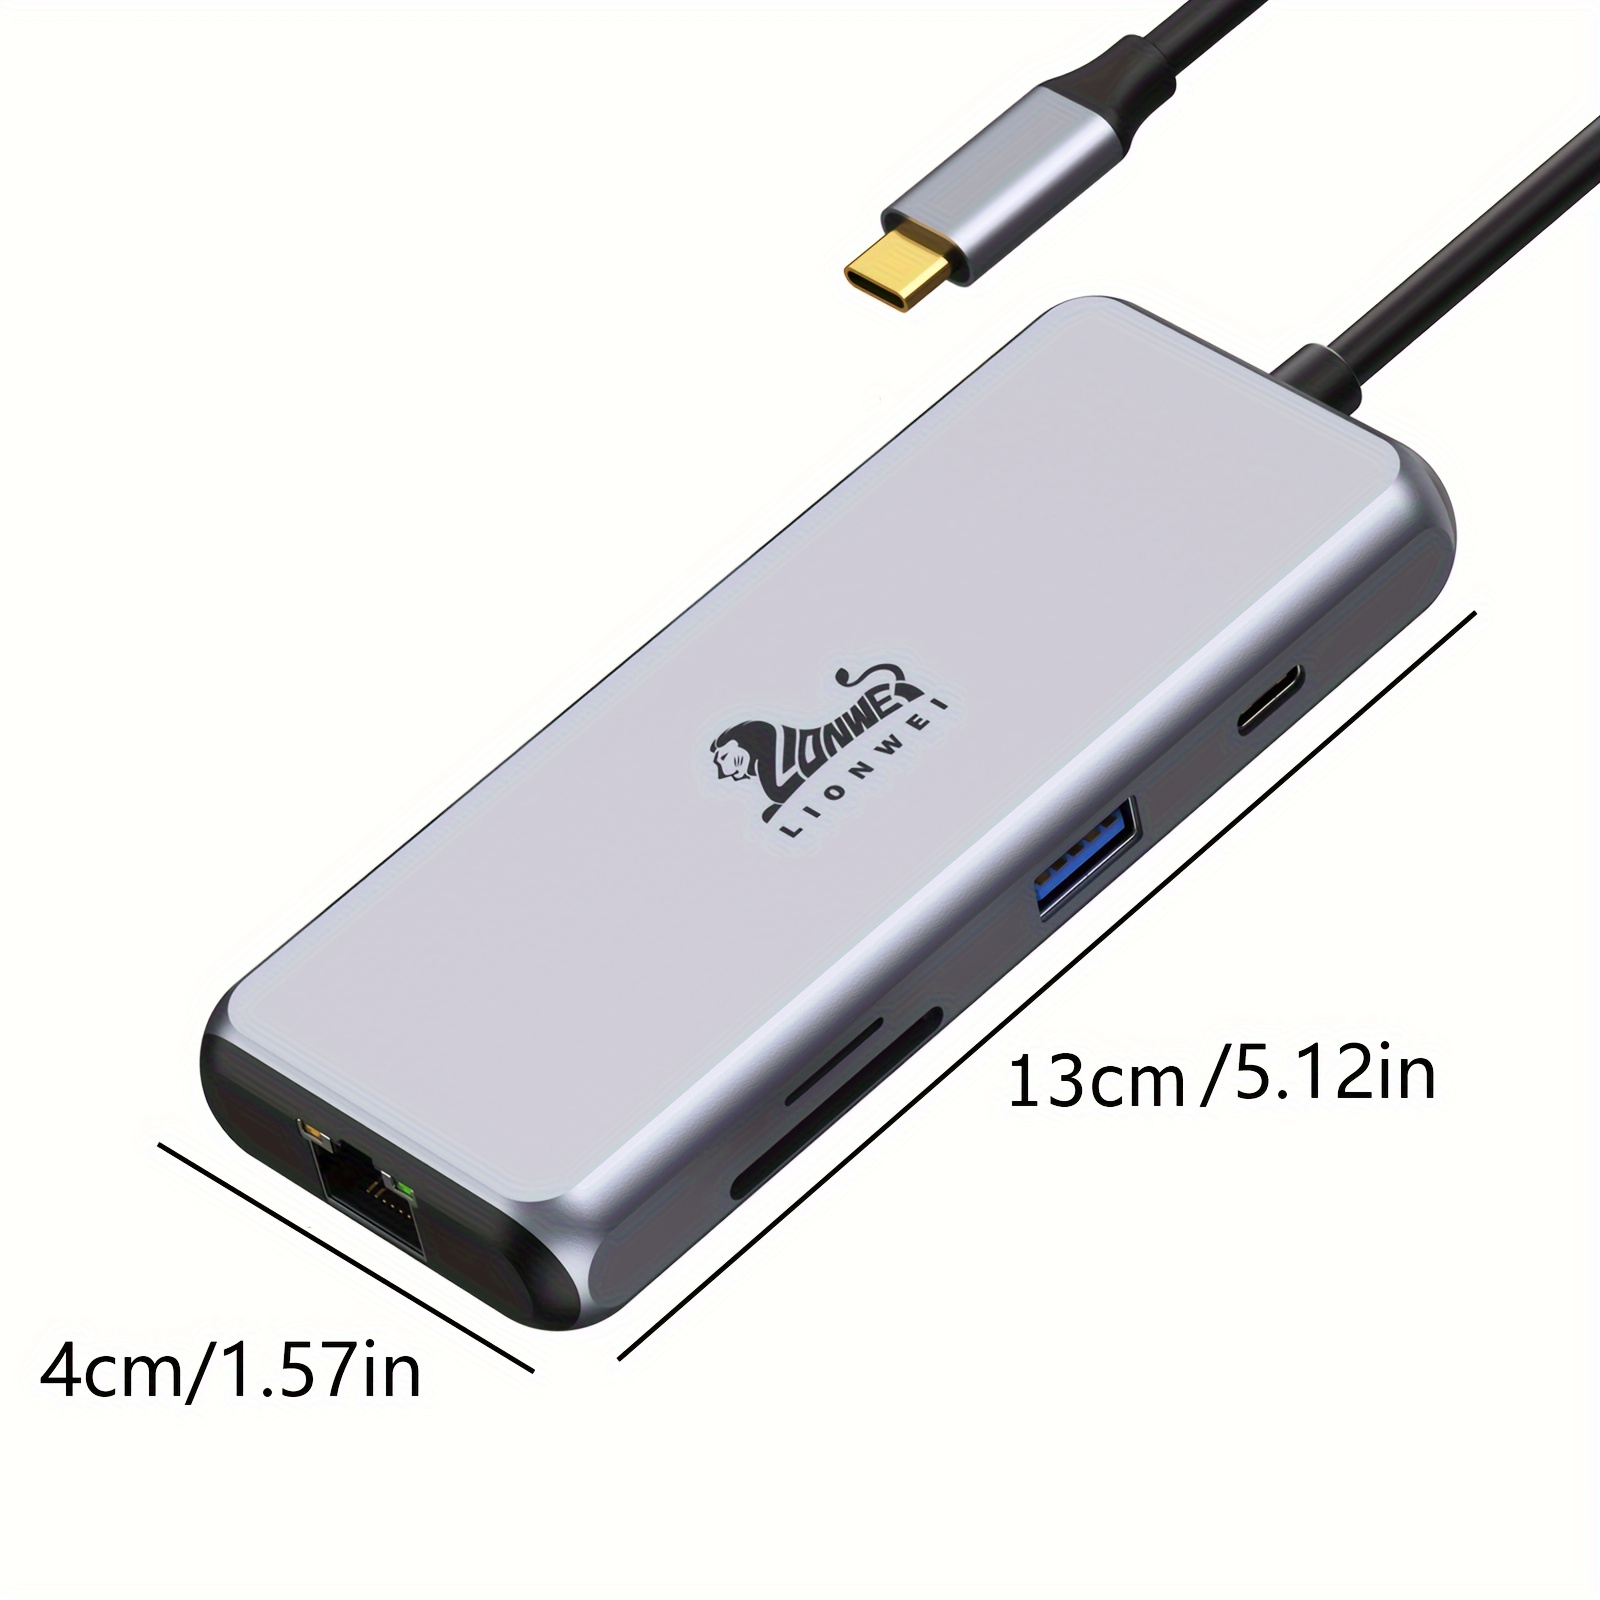 Lionwei USB C Docking Station Dual HDMI 9-IN-1